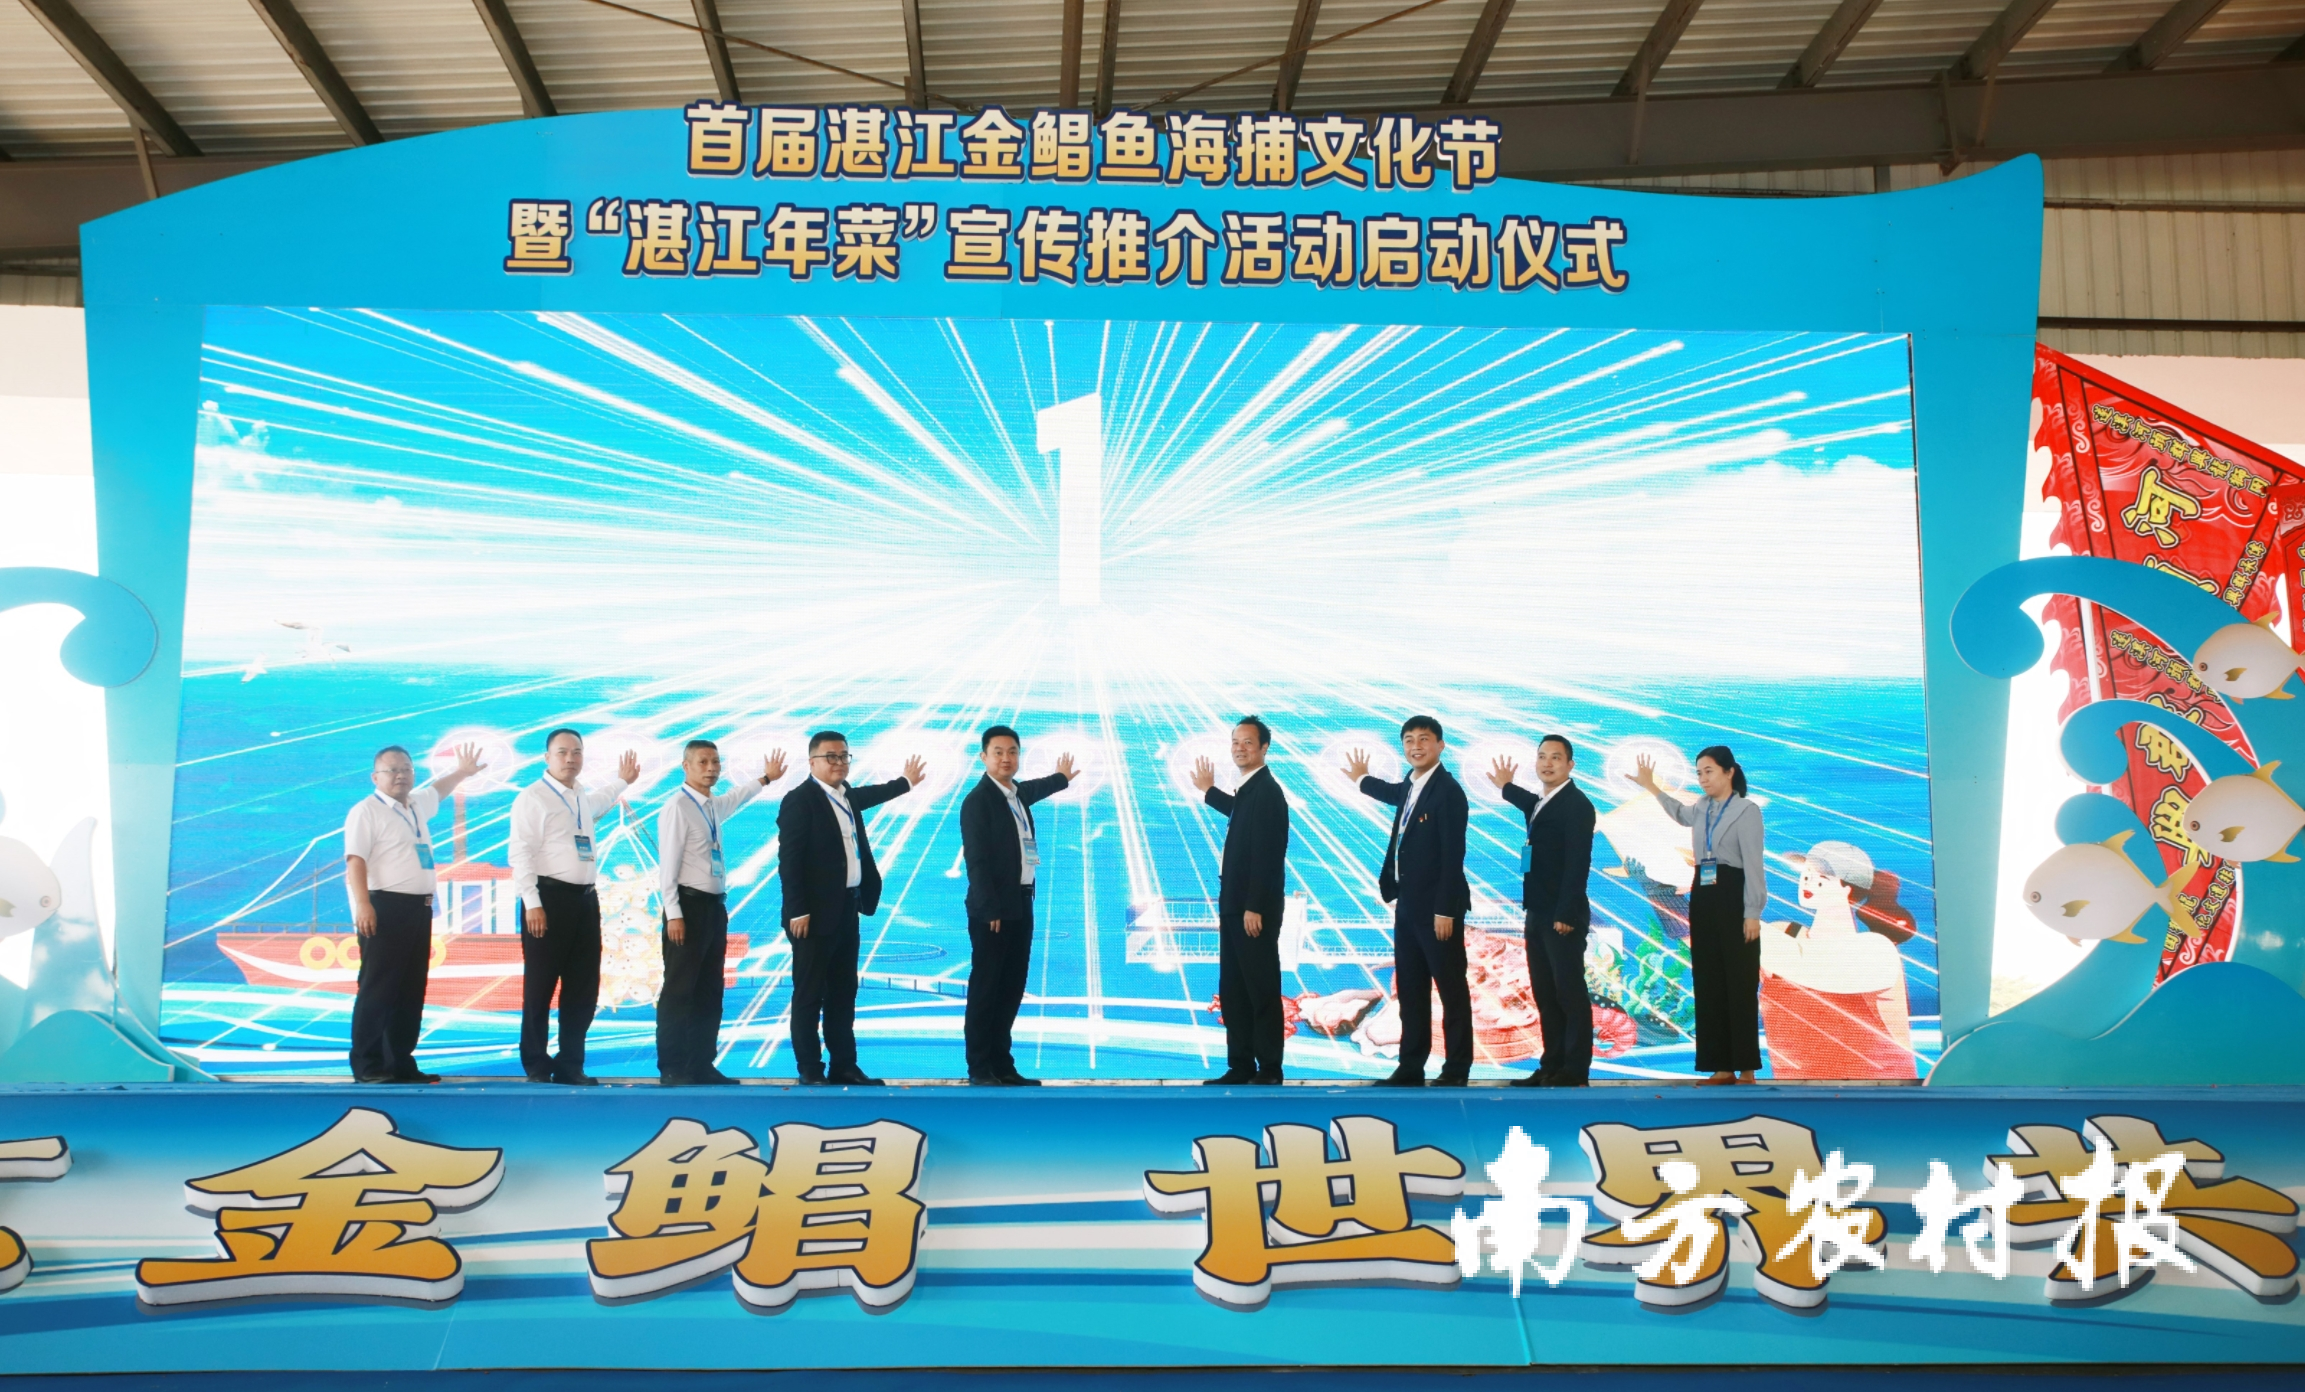 首届湛江金鲳鱼海捕文化节在遂溪县草潭镇举行。文化